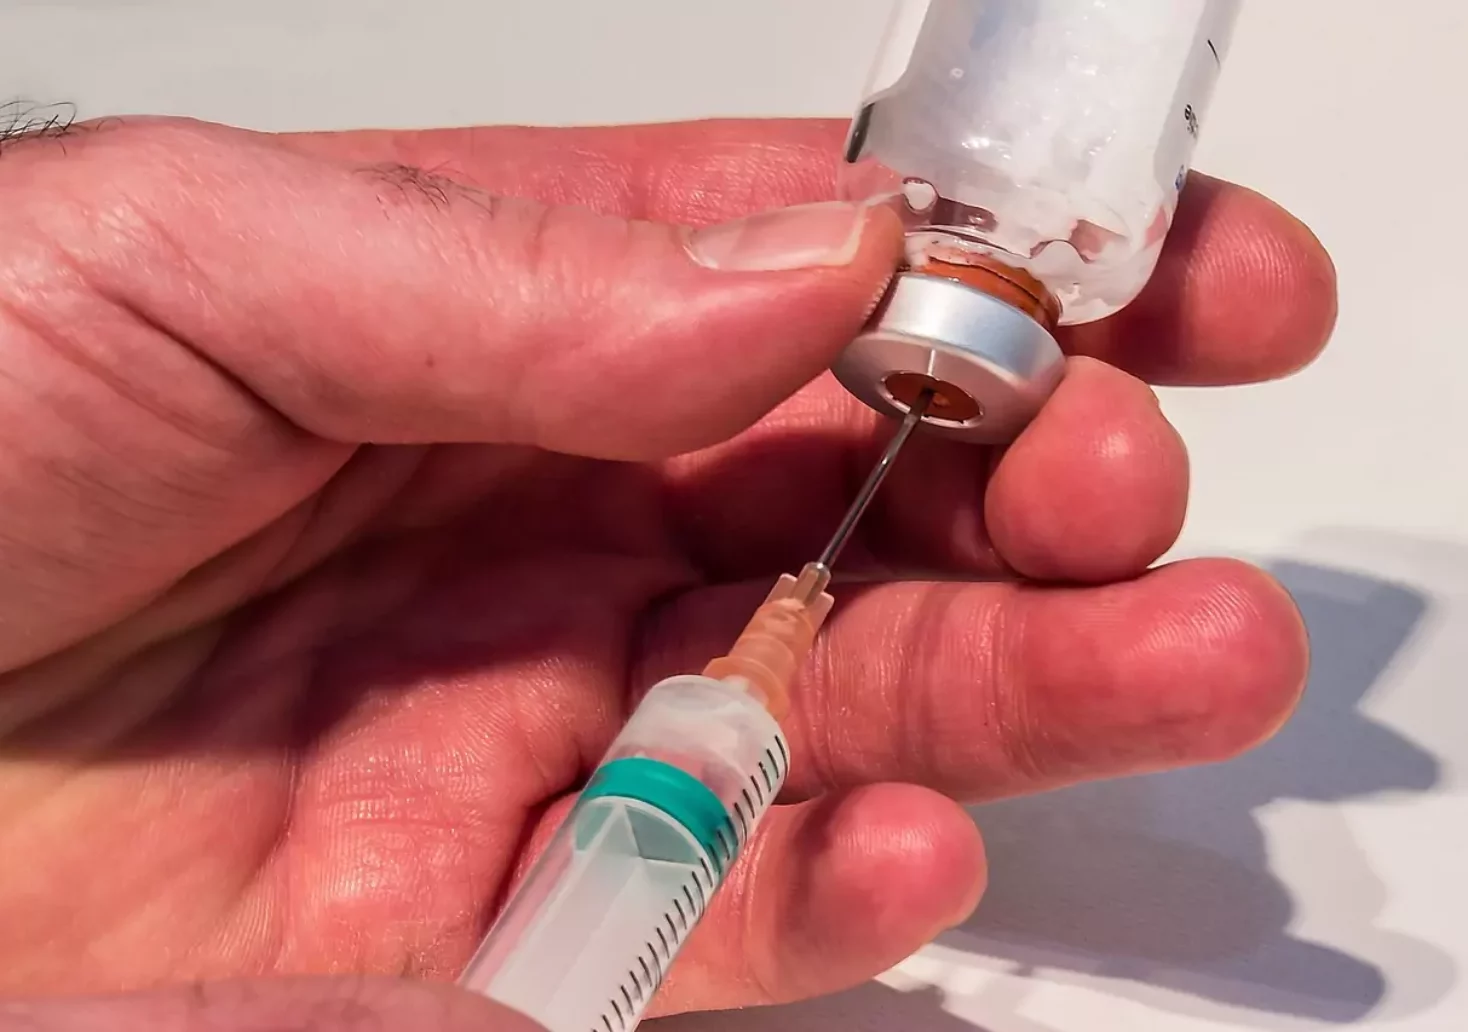 Ein Bild auf 5min.at zeigt, wie jemand einen Impfstoff mit einer Spritze aufnimmt.